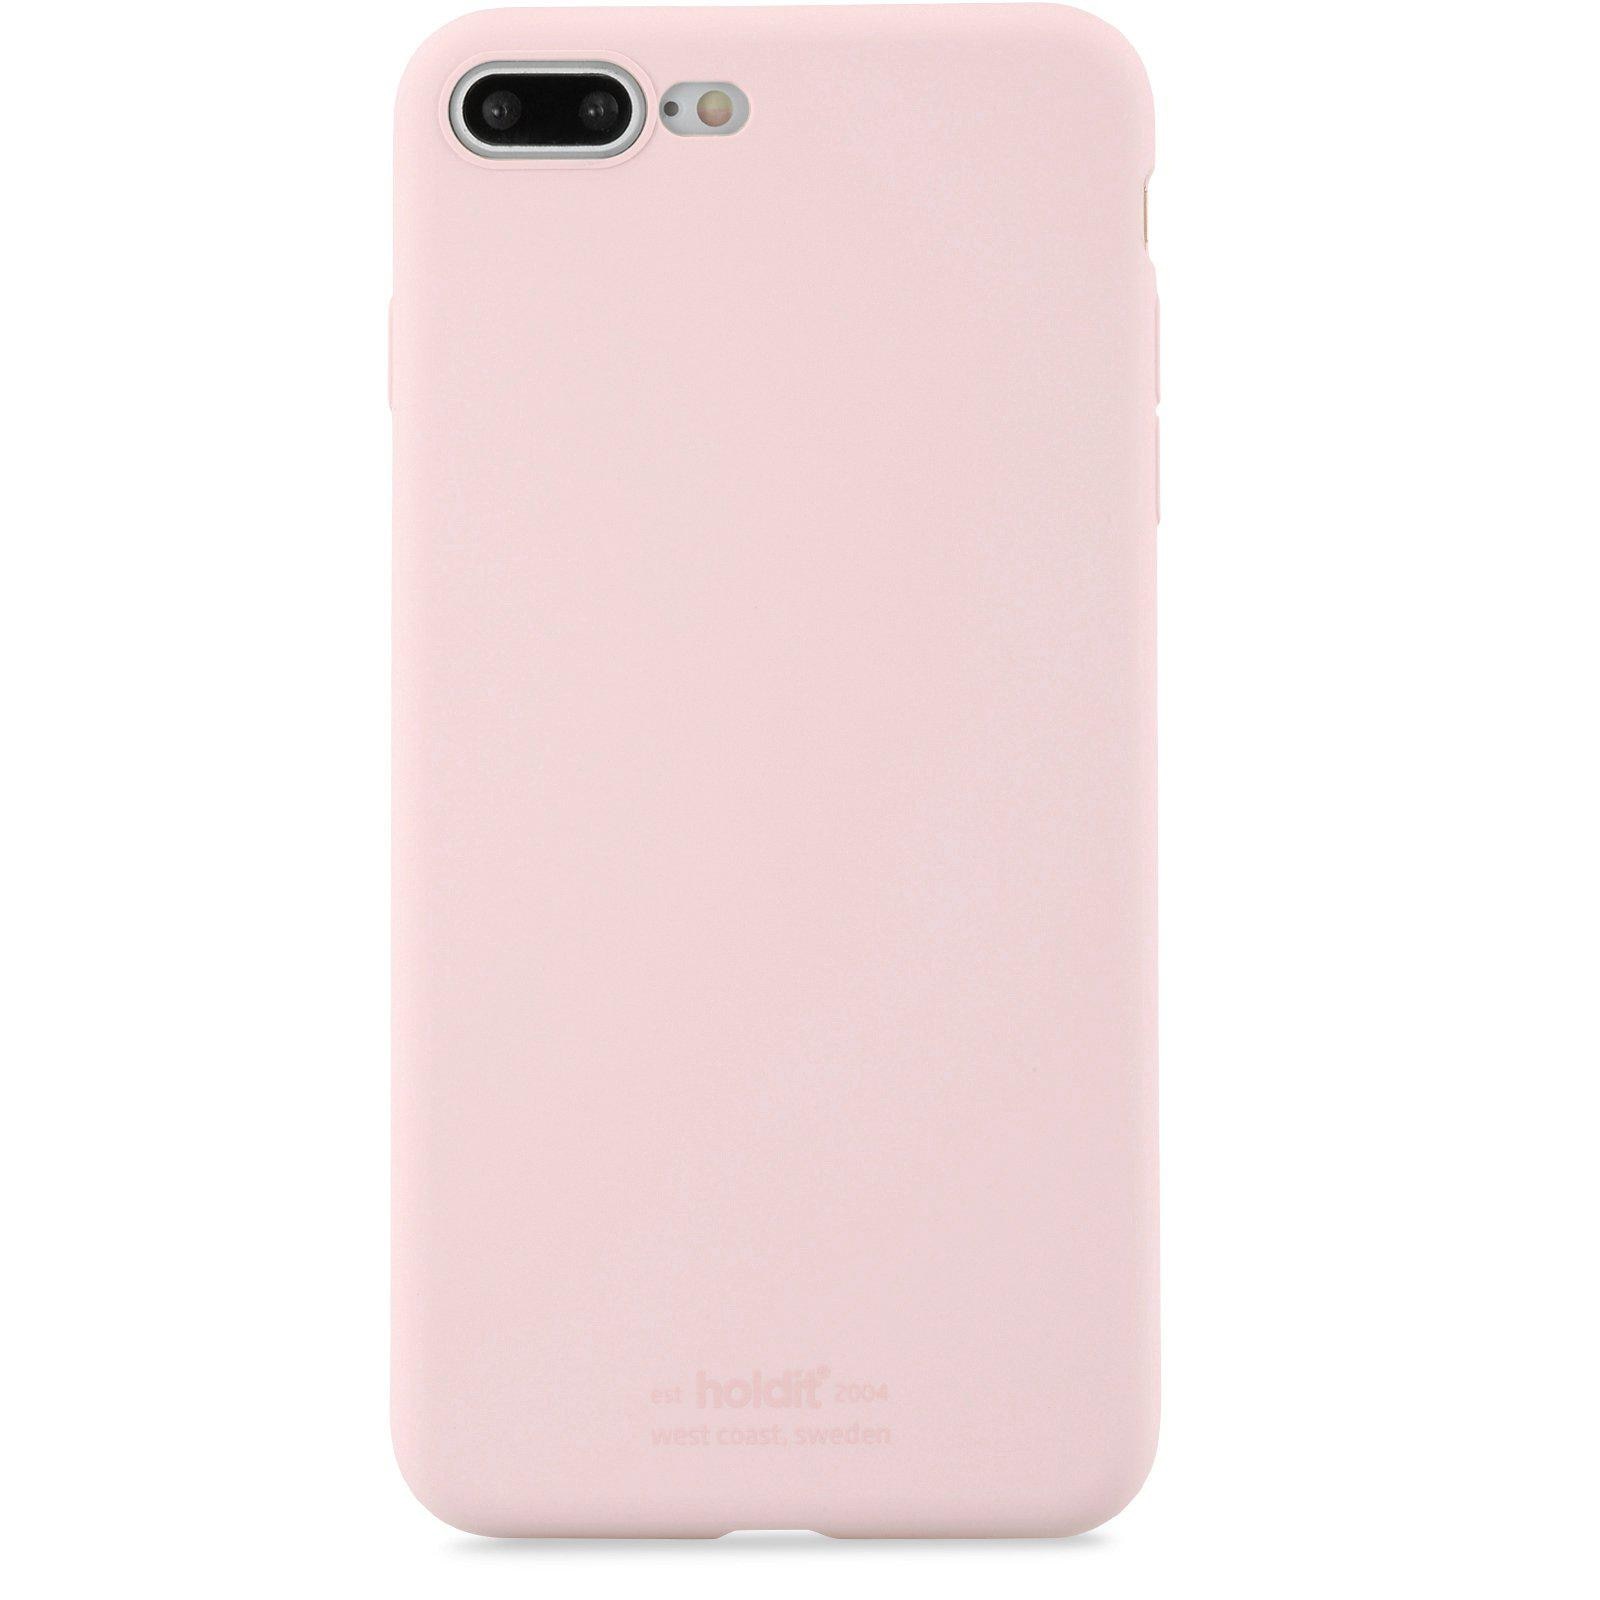 iPhone 7 Plus/8 Plus Silicone Case, Blush Pink